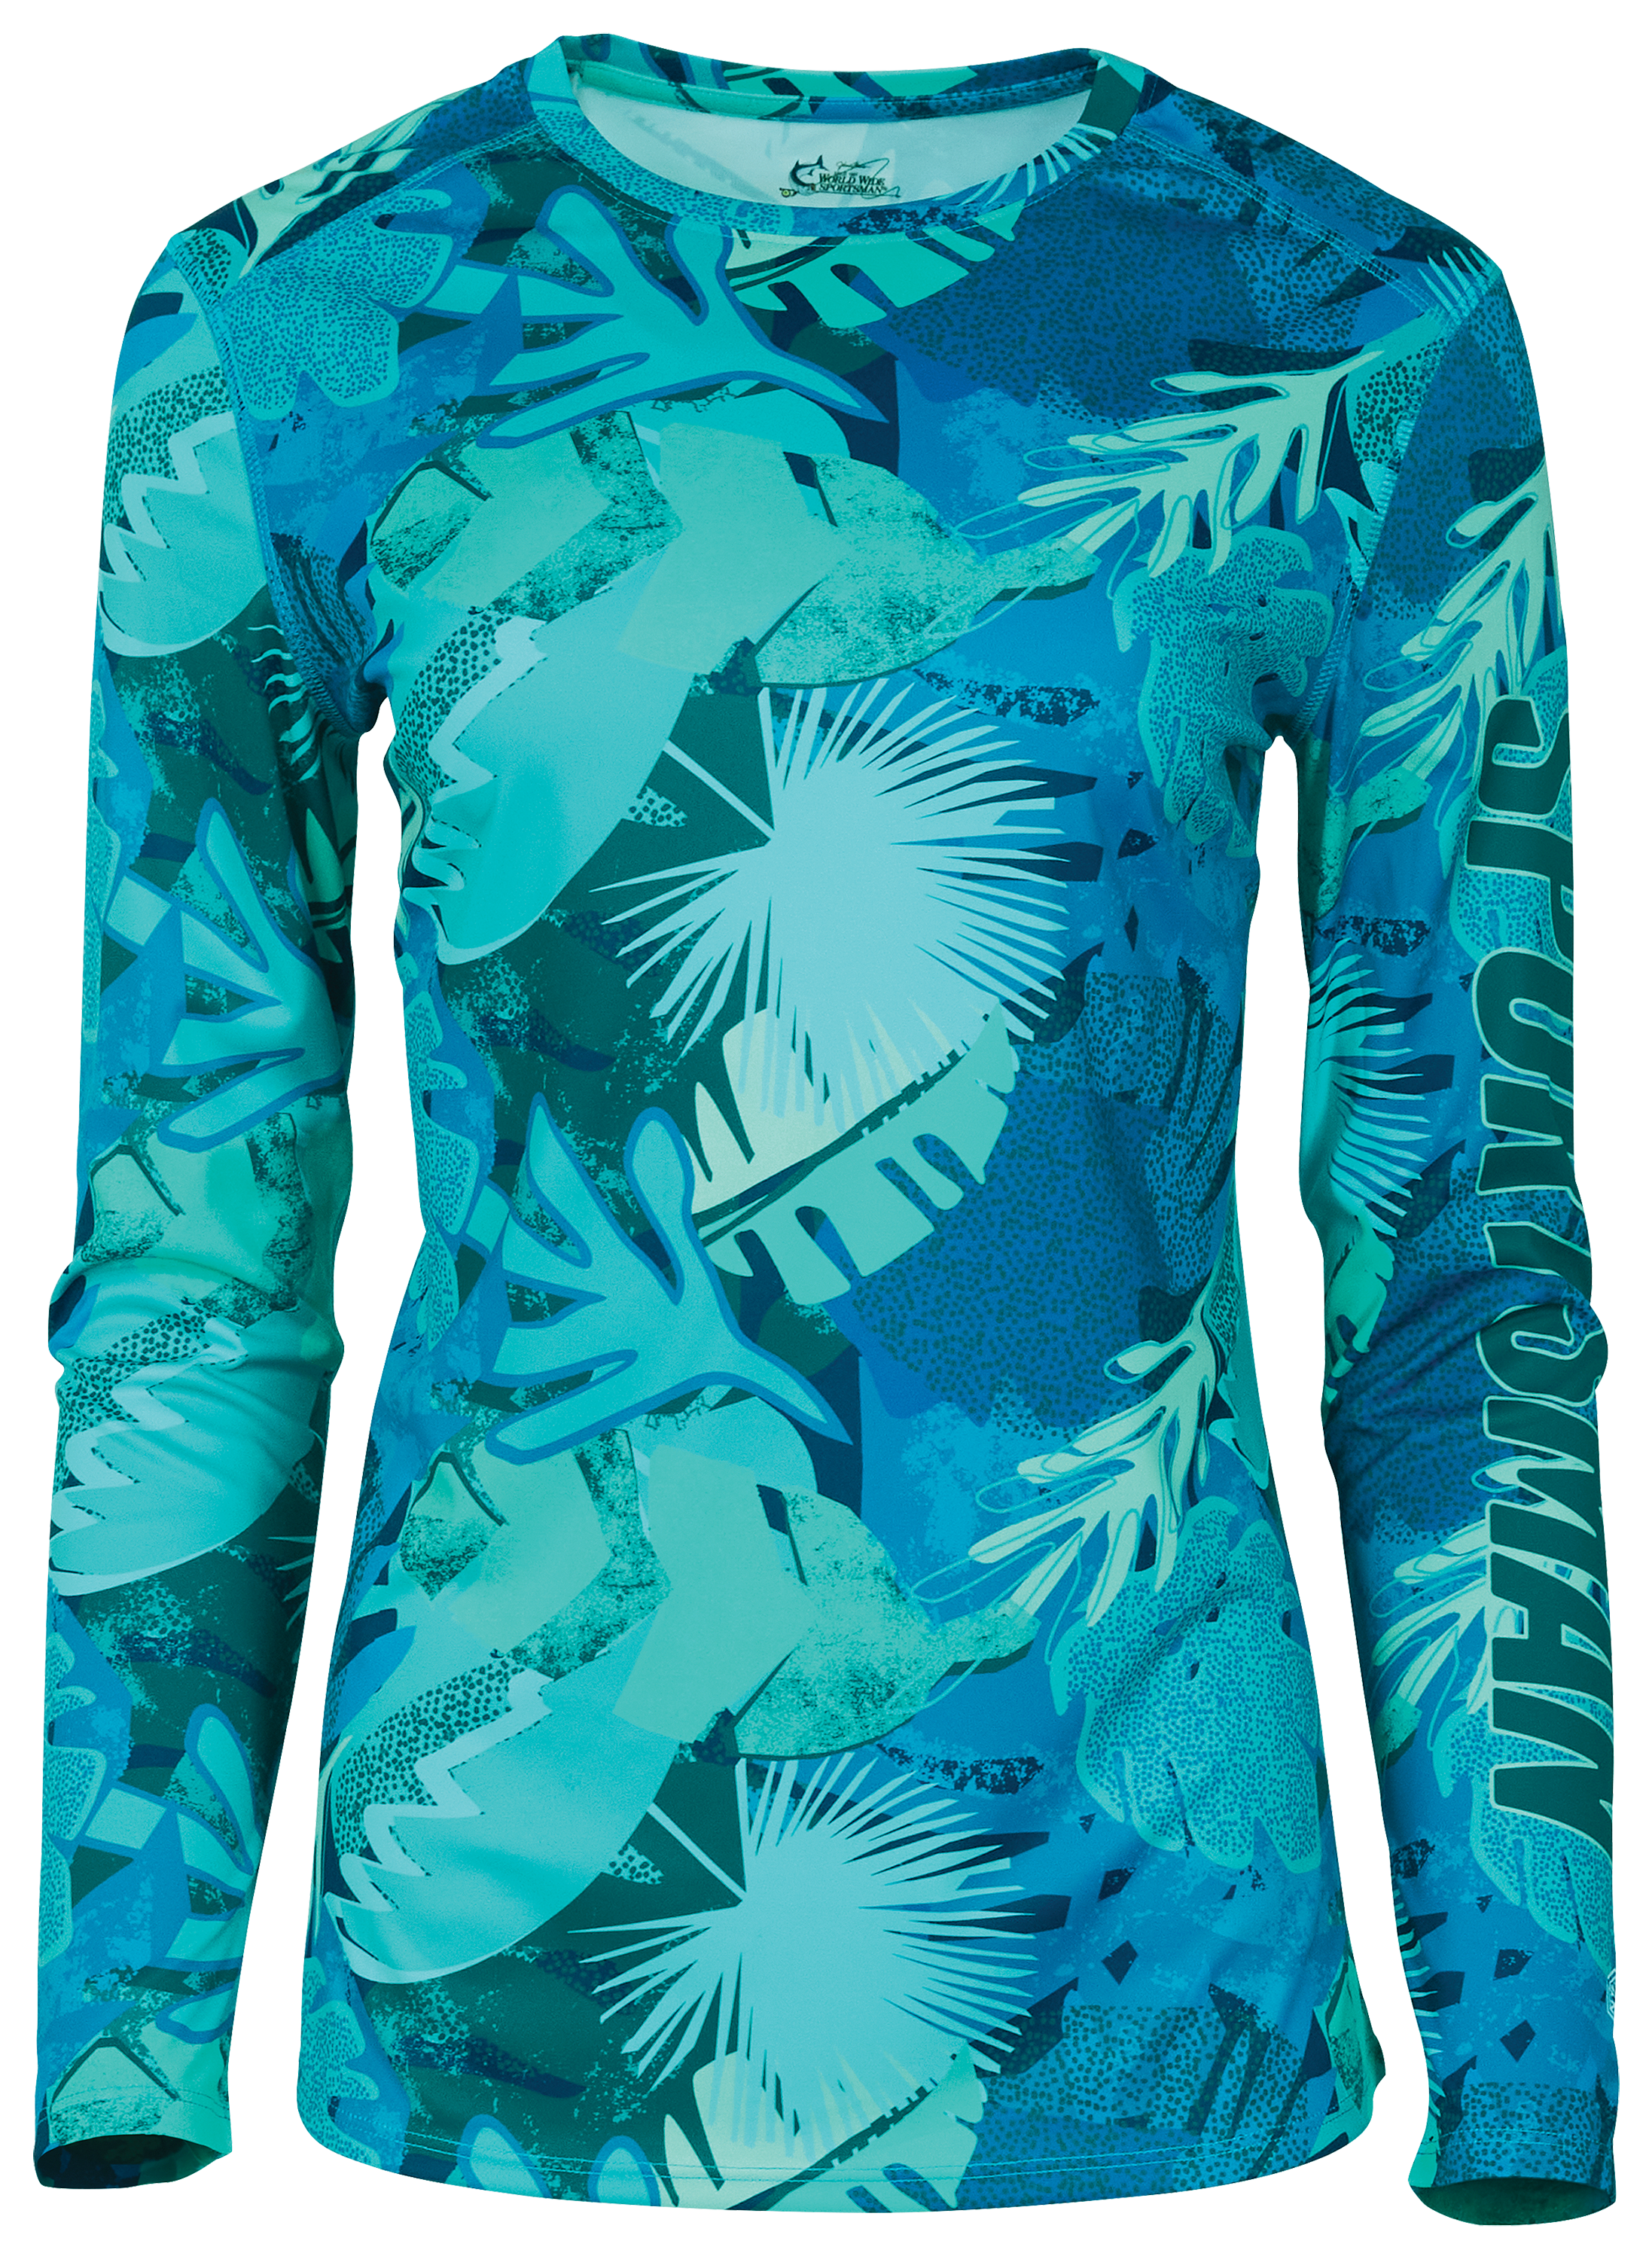 Tek Gear Tropical Multi Color Blue Active Pants Size 3X (Plus